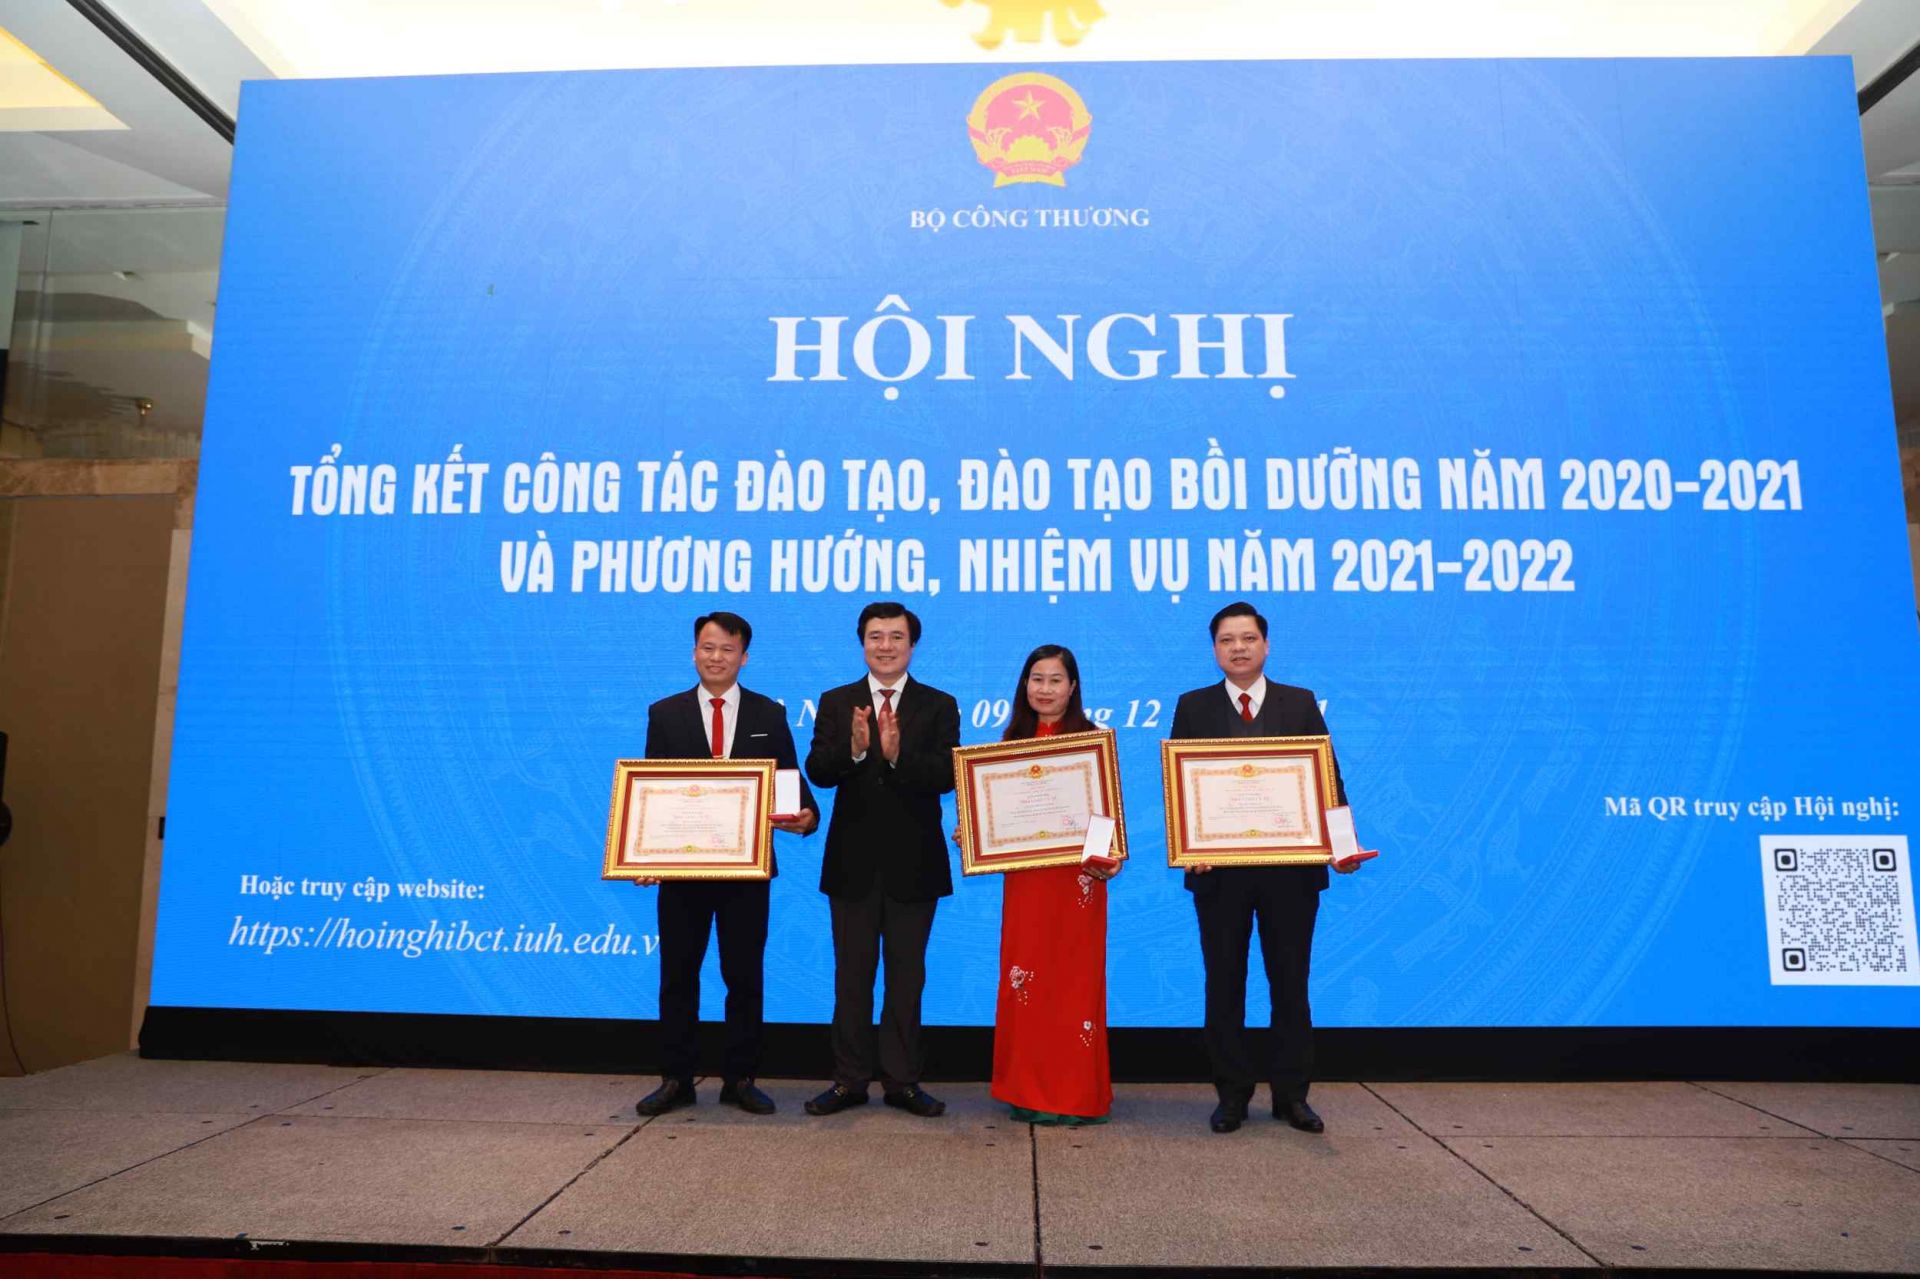 Thứ trưởng Nguyễn Sinh Nhật Tân trao danh hiệu Nhà giáo ưu tú cho các nhà giáo